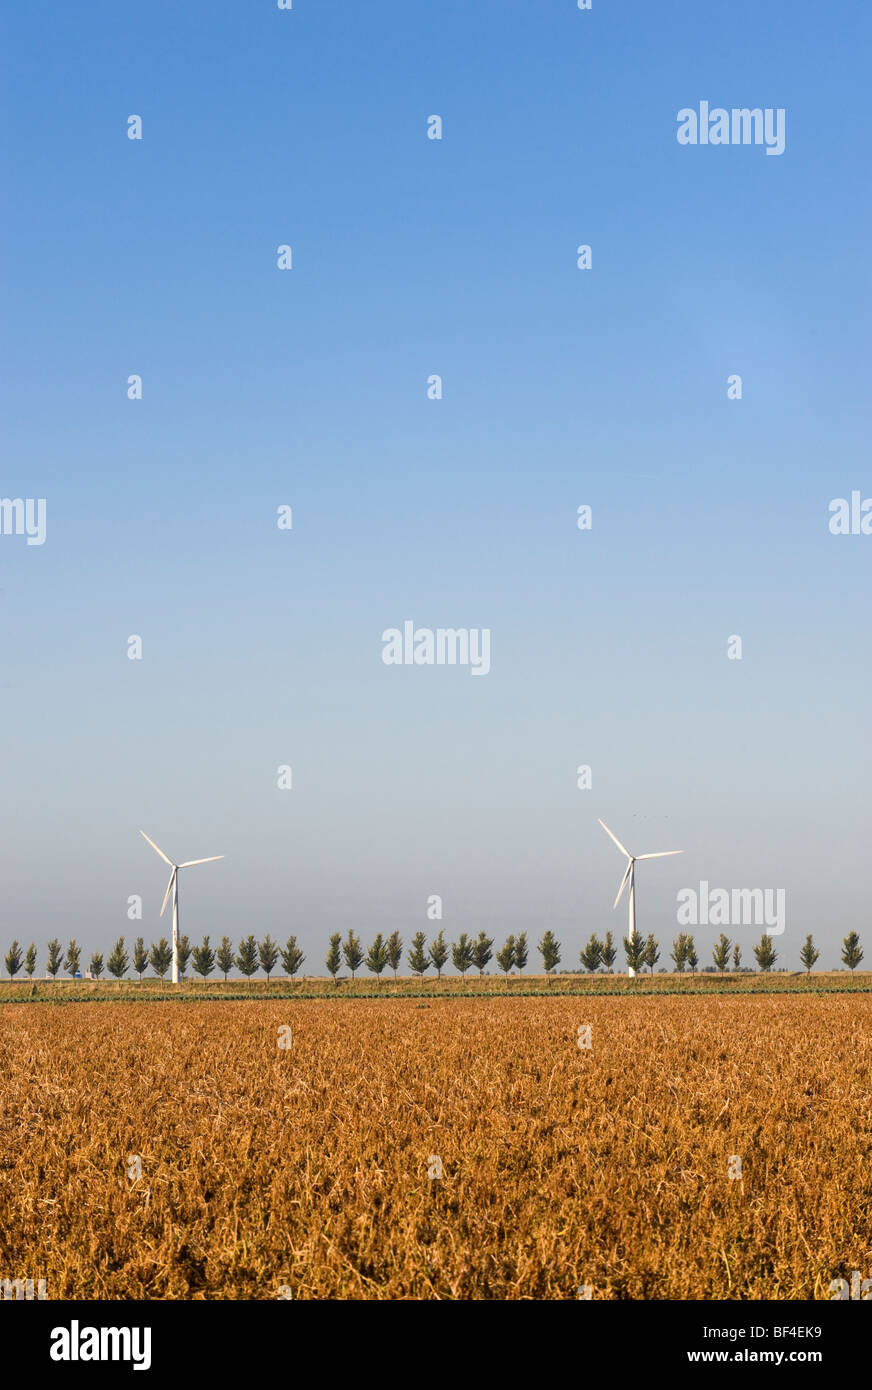 Éoliennes derrière une avenue bordée d'arbres, la Zélande, la Hollande, Pays-Bas, Europe Banque D'Images